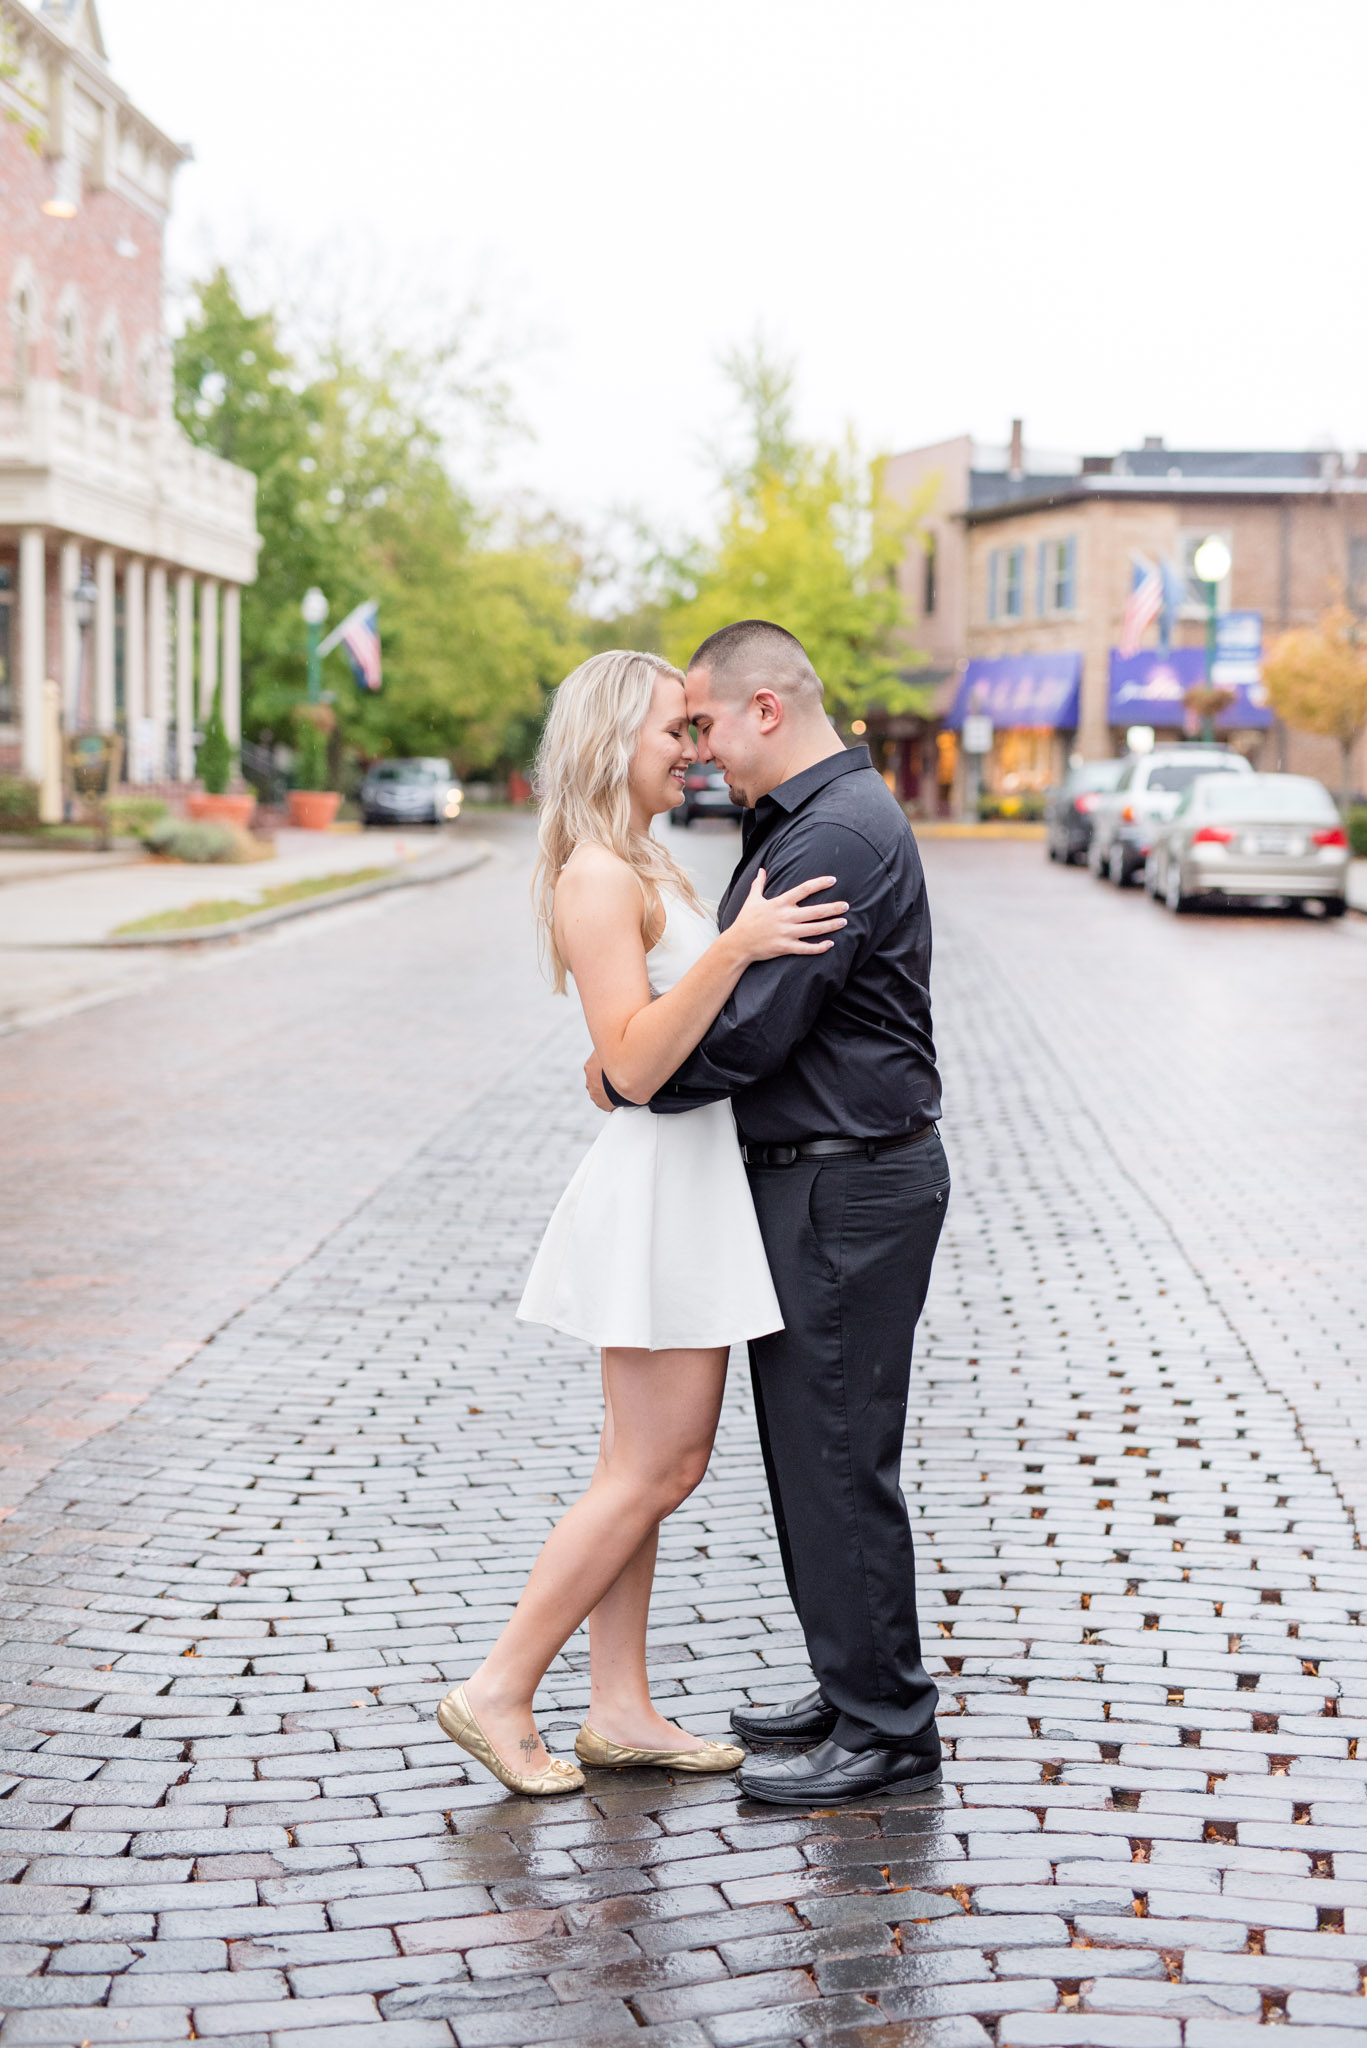 Bride and groom hug on brick street.